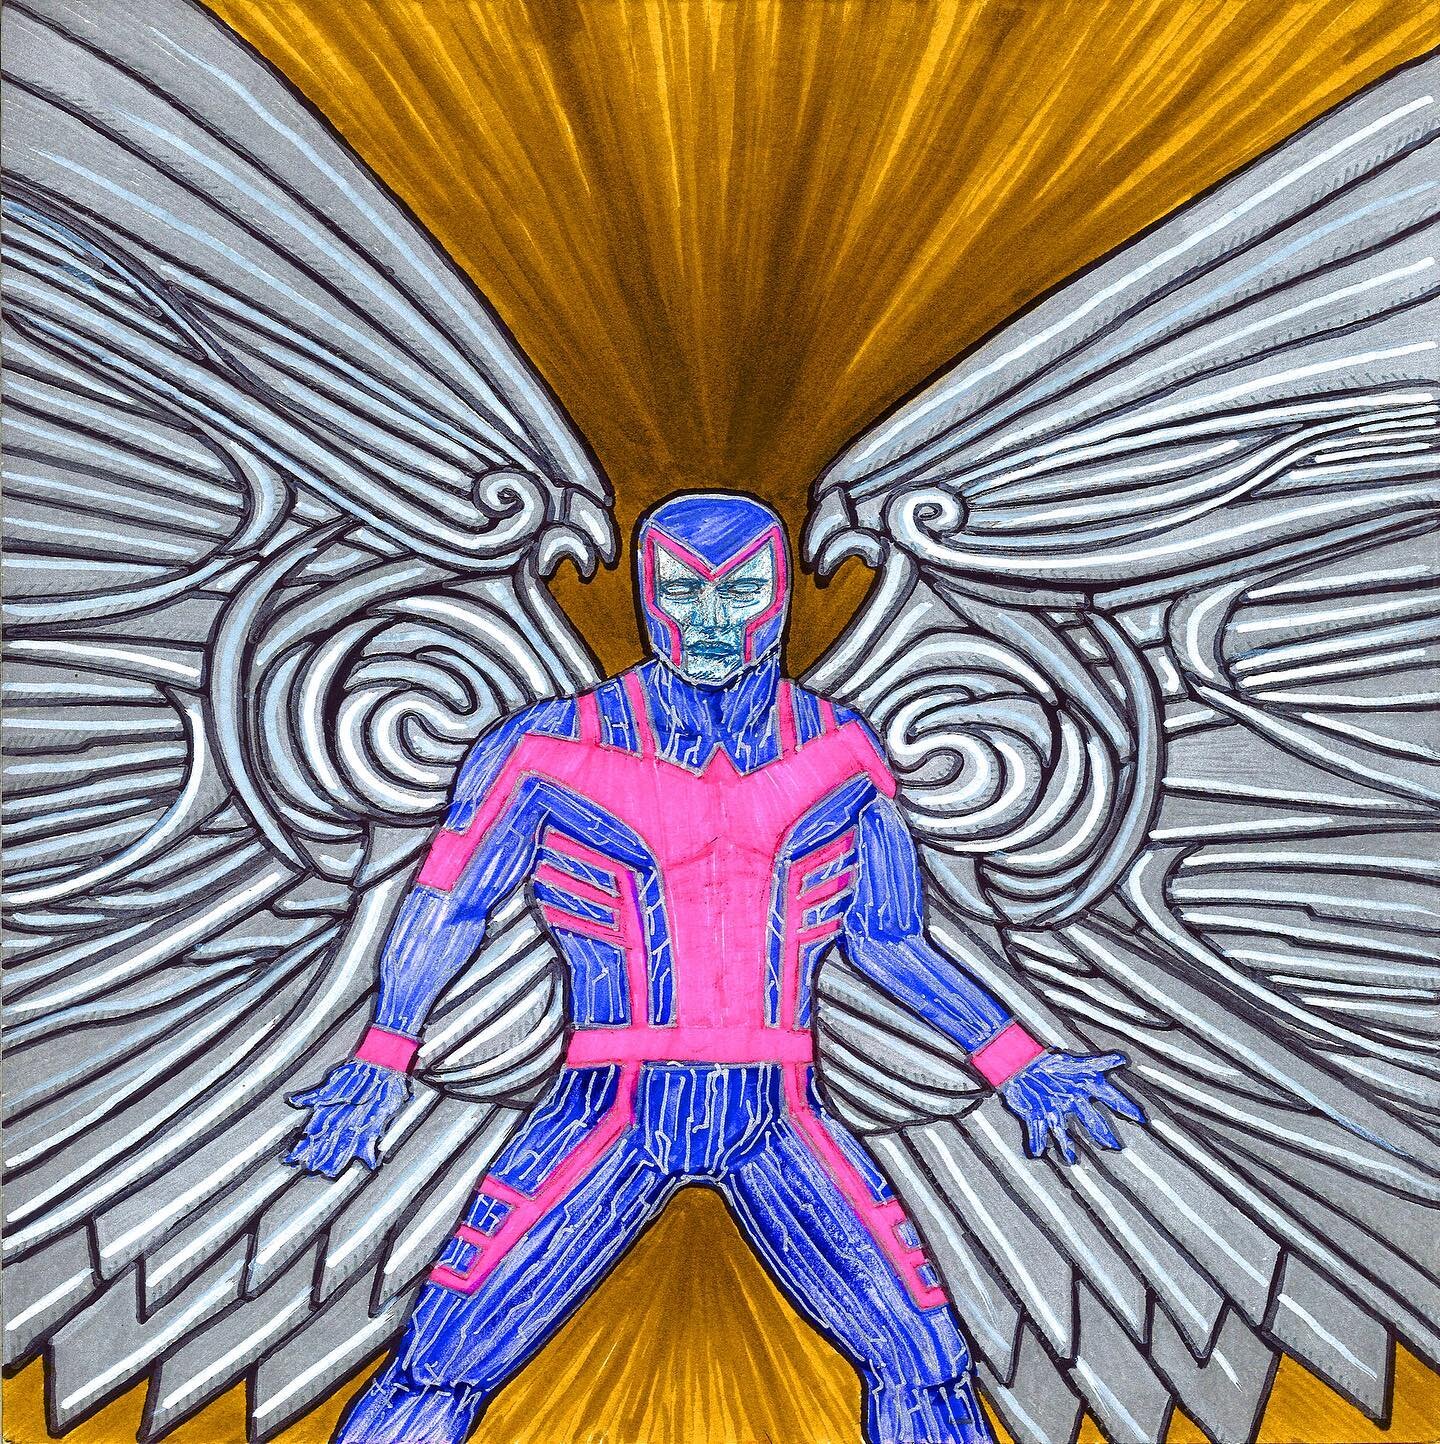 &ldquo;November 01, 1990&rdquo;

#1990s #90s #Archangel #WarrenWorthingtonIII #Xmen #UncannyXmen #TheUncannyXmen #Mutants #Mutant  #nineties #marvel #marvelcomics #marveluniverse #mcu #superheroes #superhero #comicbook #comics #art #artist #arts #art